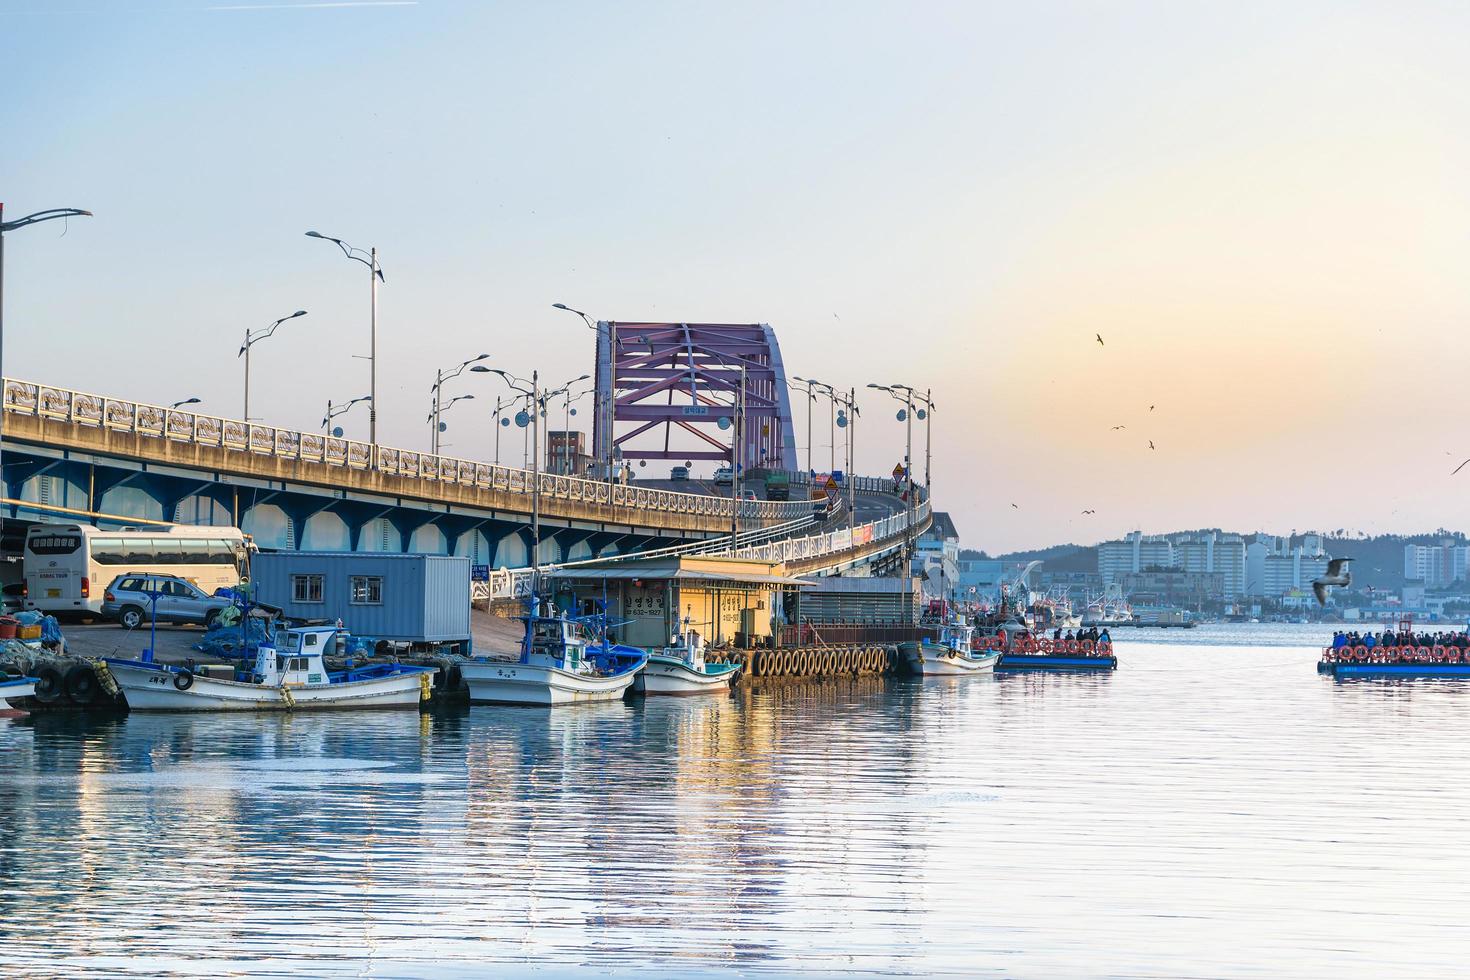 seoul, korea, jan 02, 2016 - brug over een rivier in een vissersdorp foto